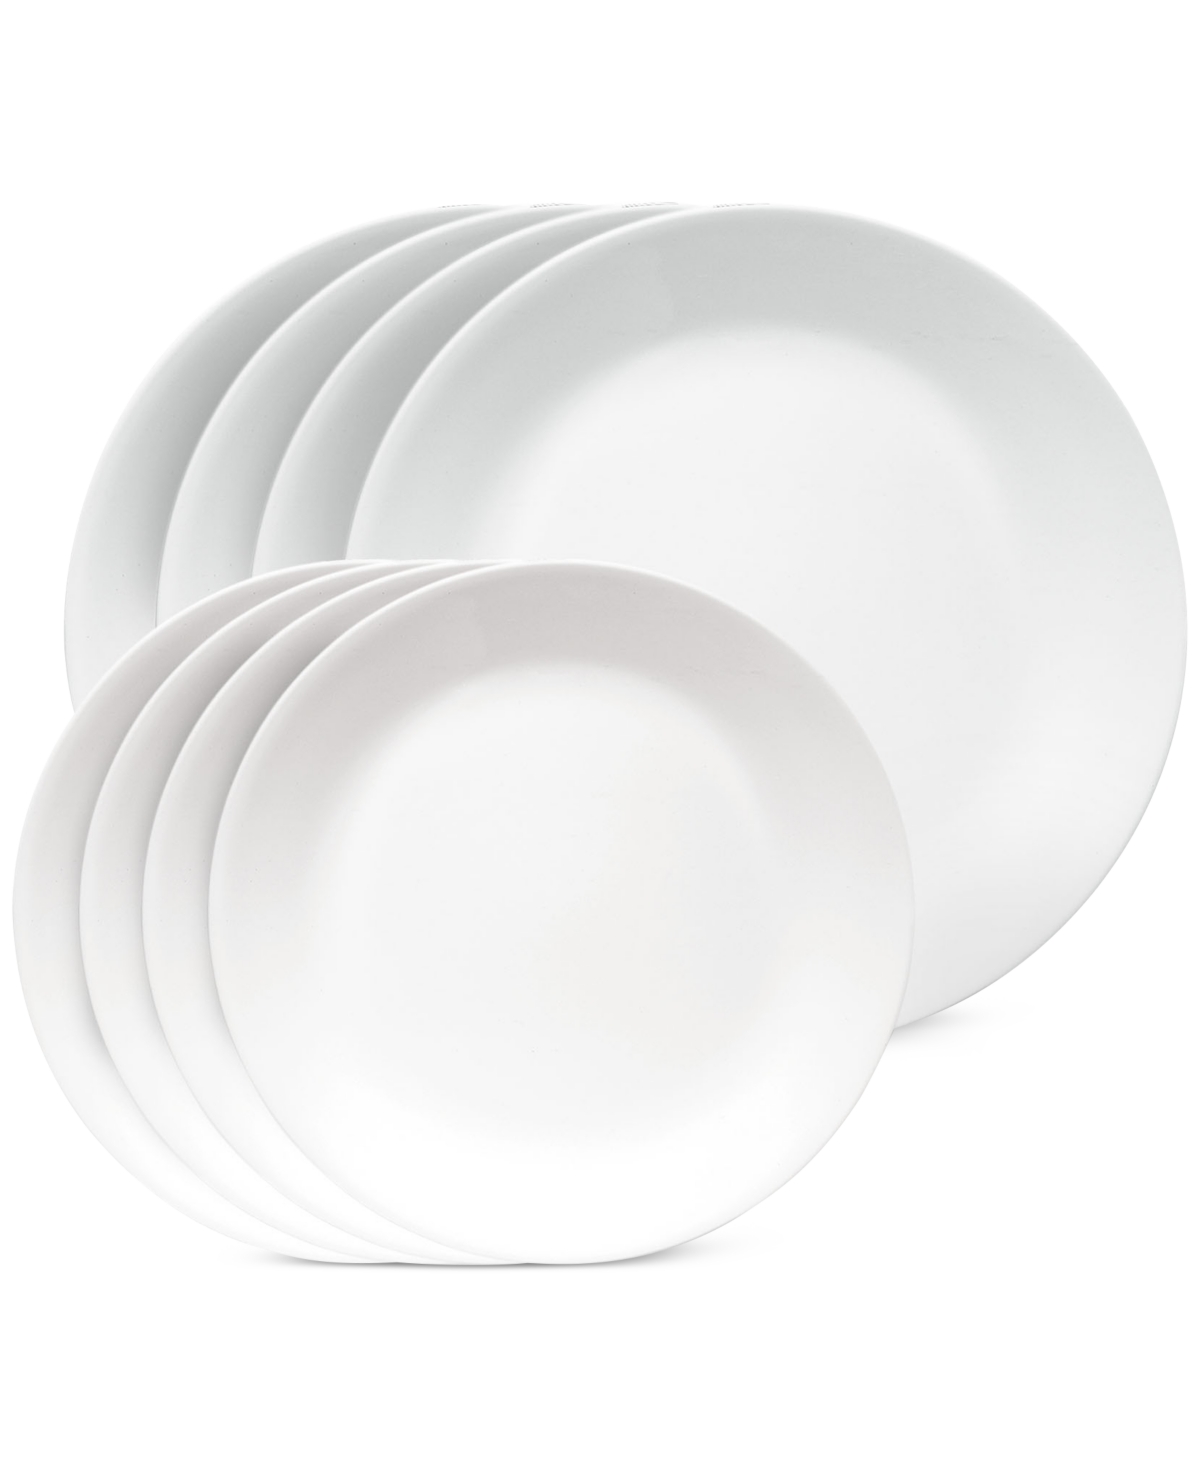 Vitrelle Shimmering White Plates, Set of 8 - White